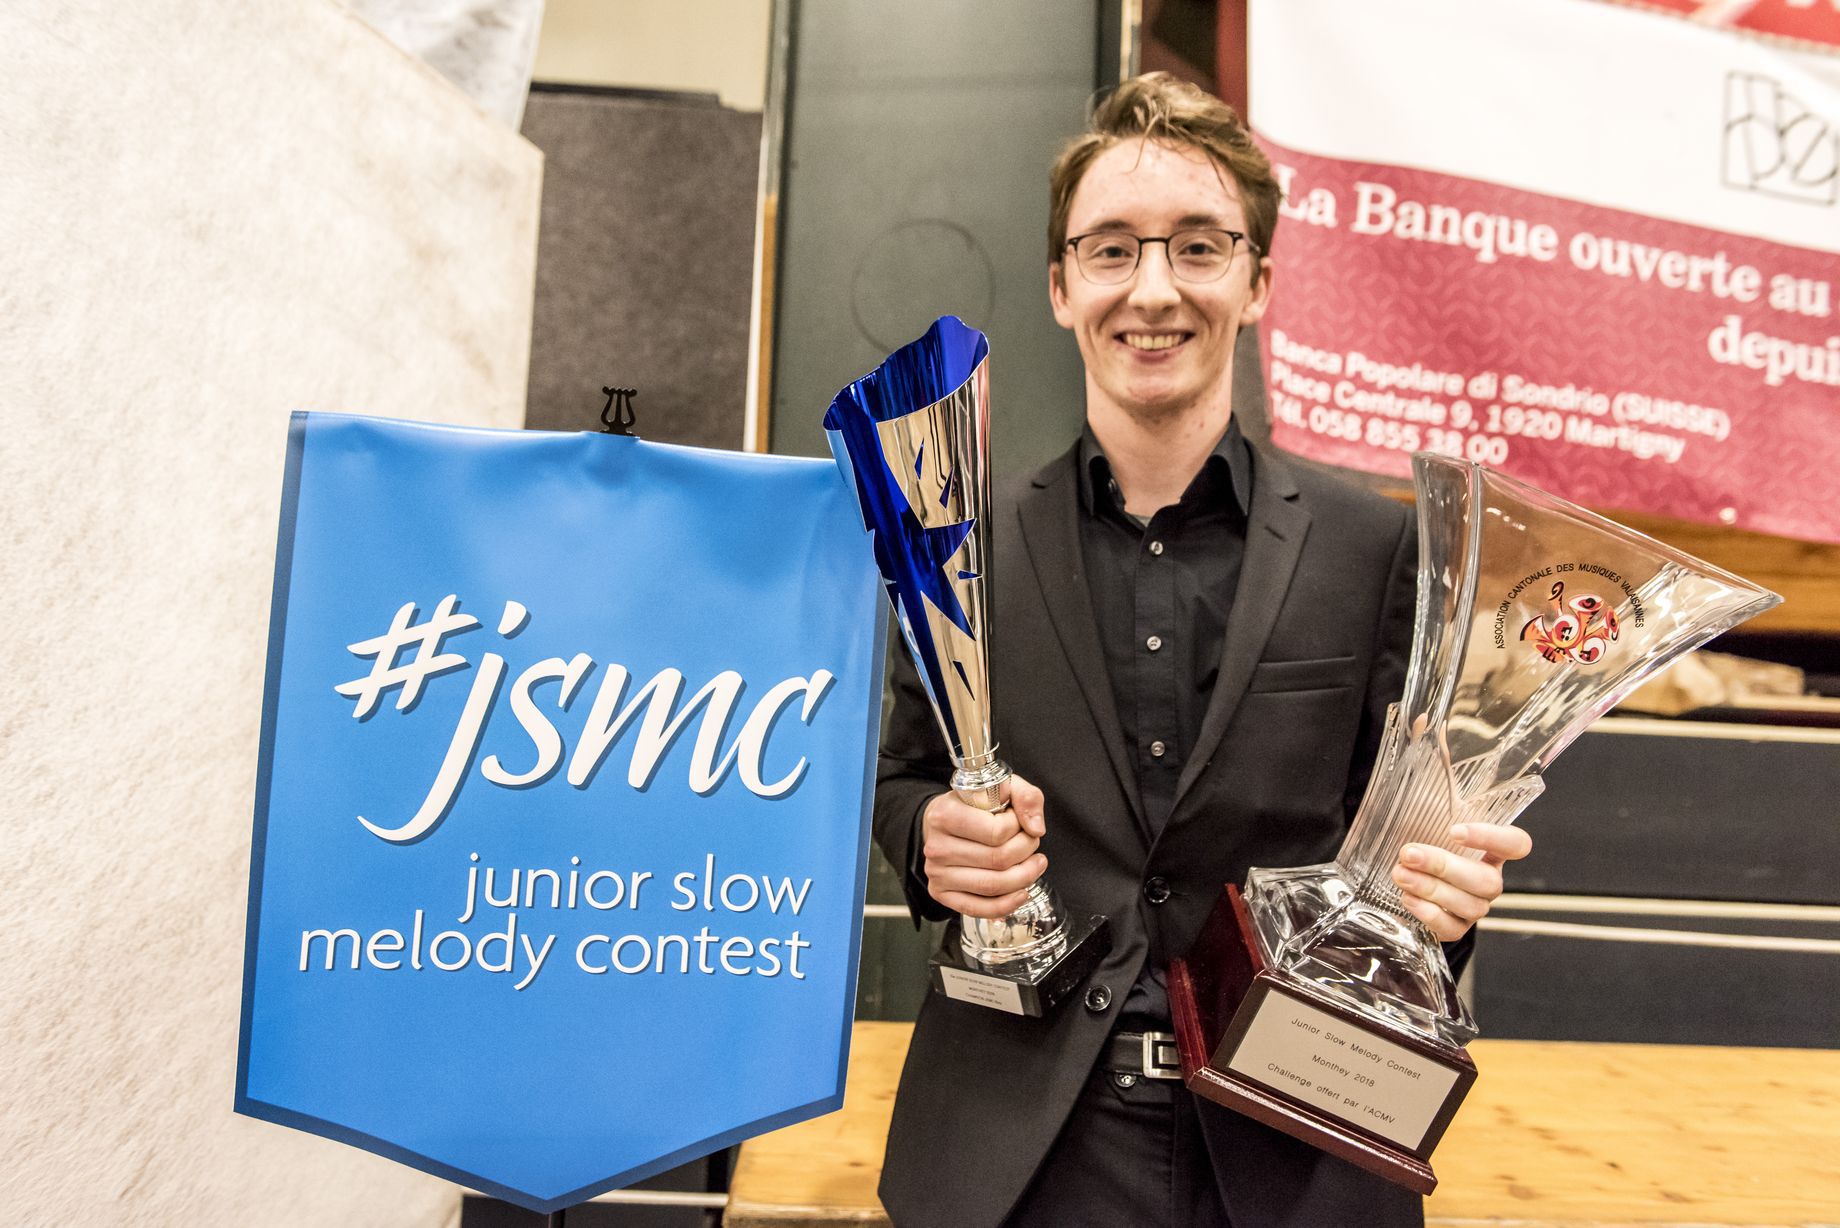 Organisée à Monthey, la 15ème édition du Junior slow melody contest a souri à. Gabriel Pernet.